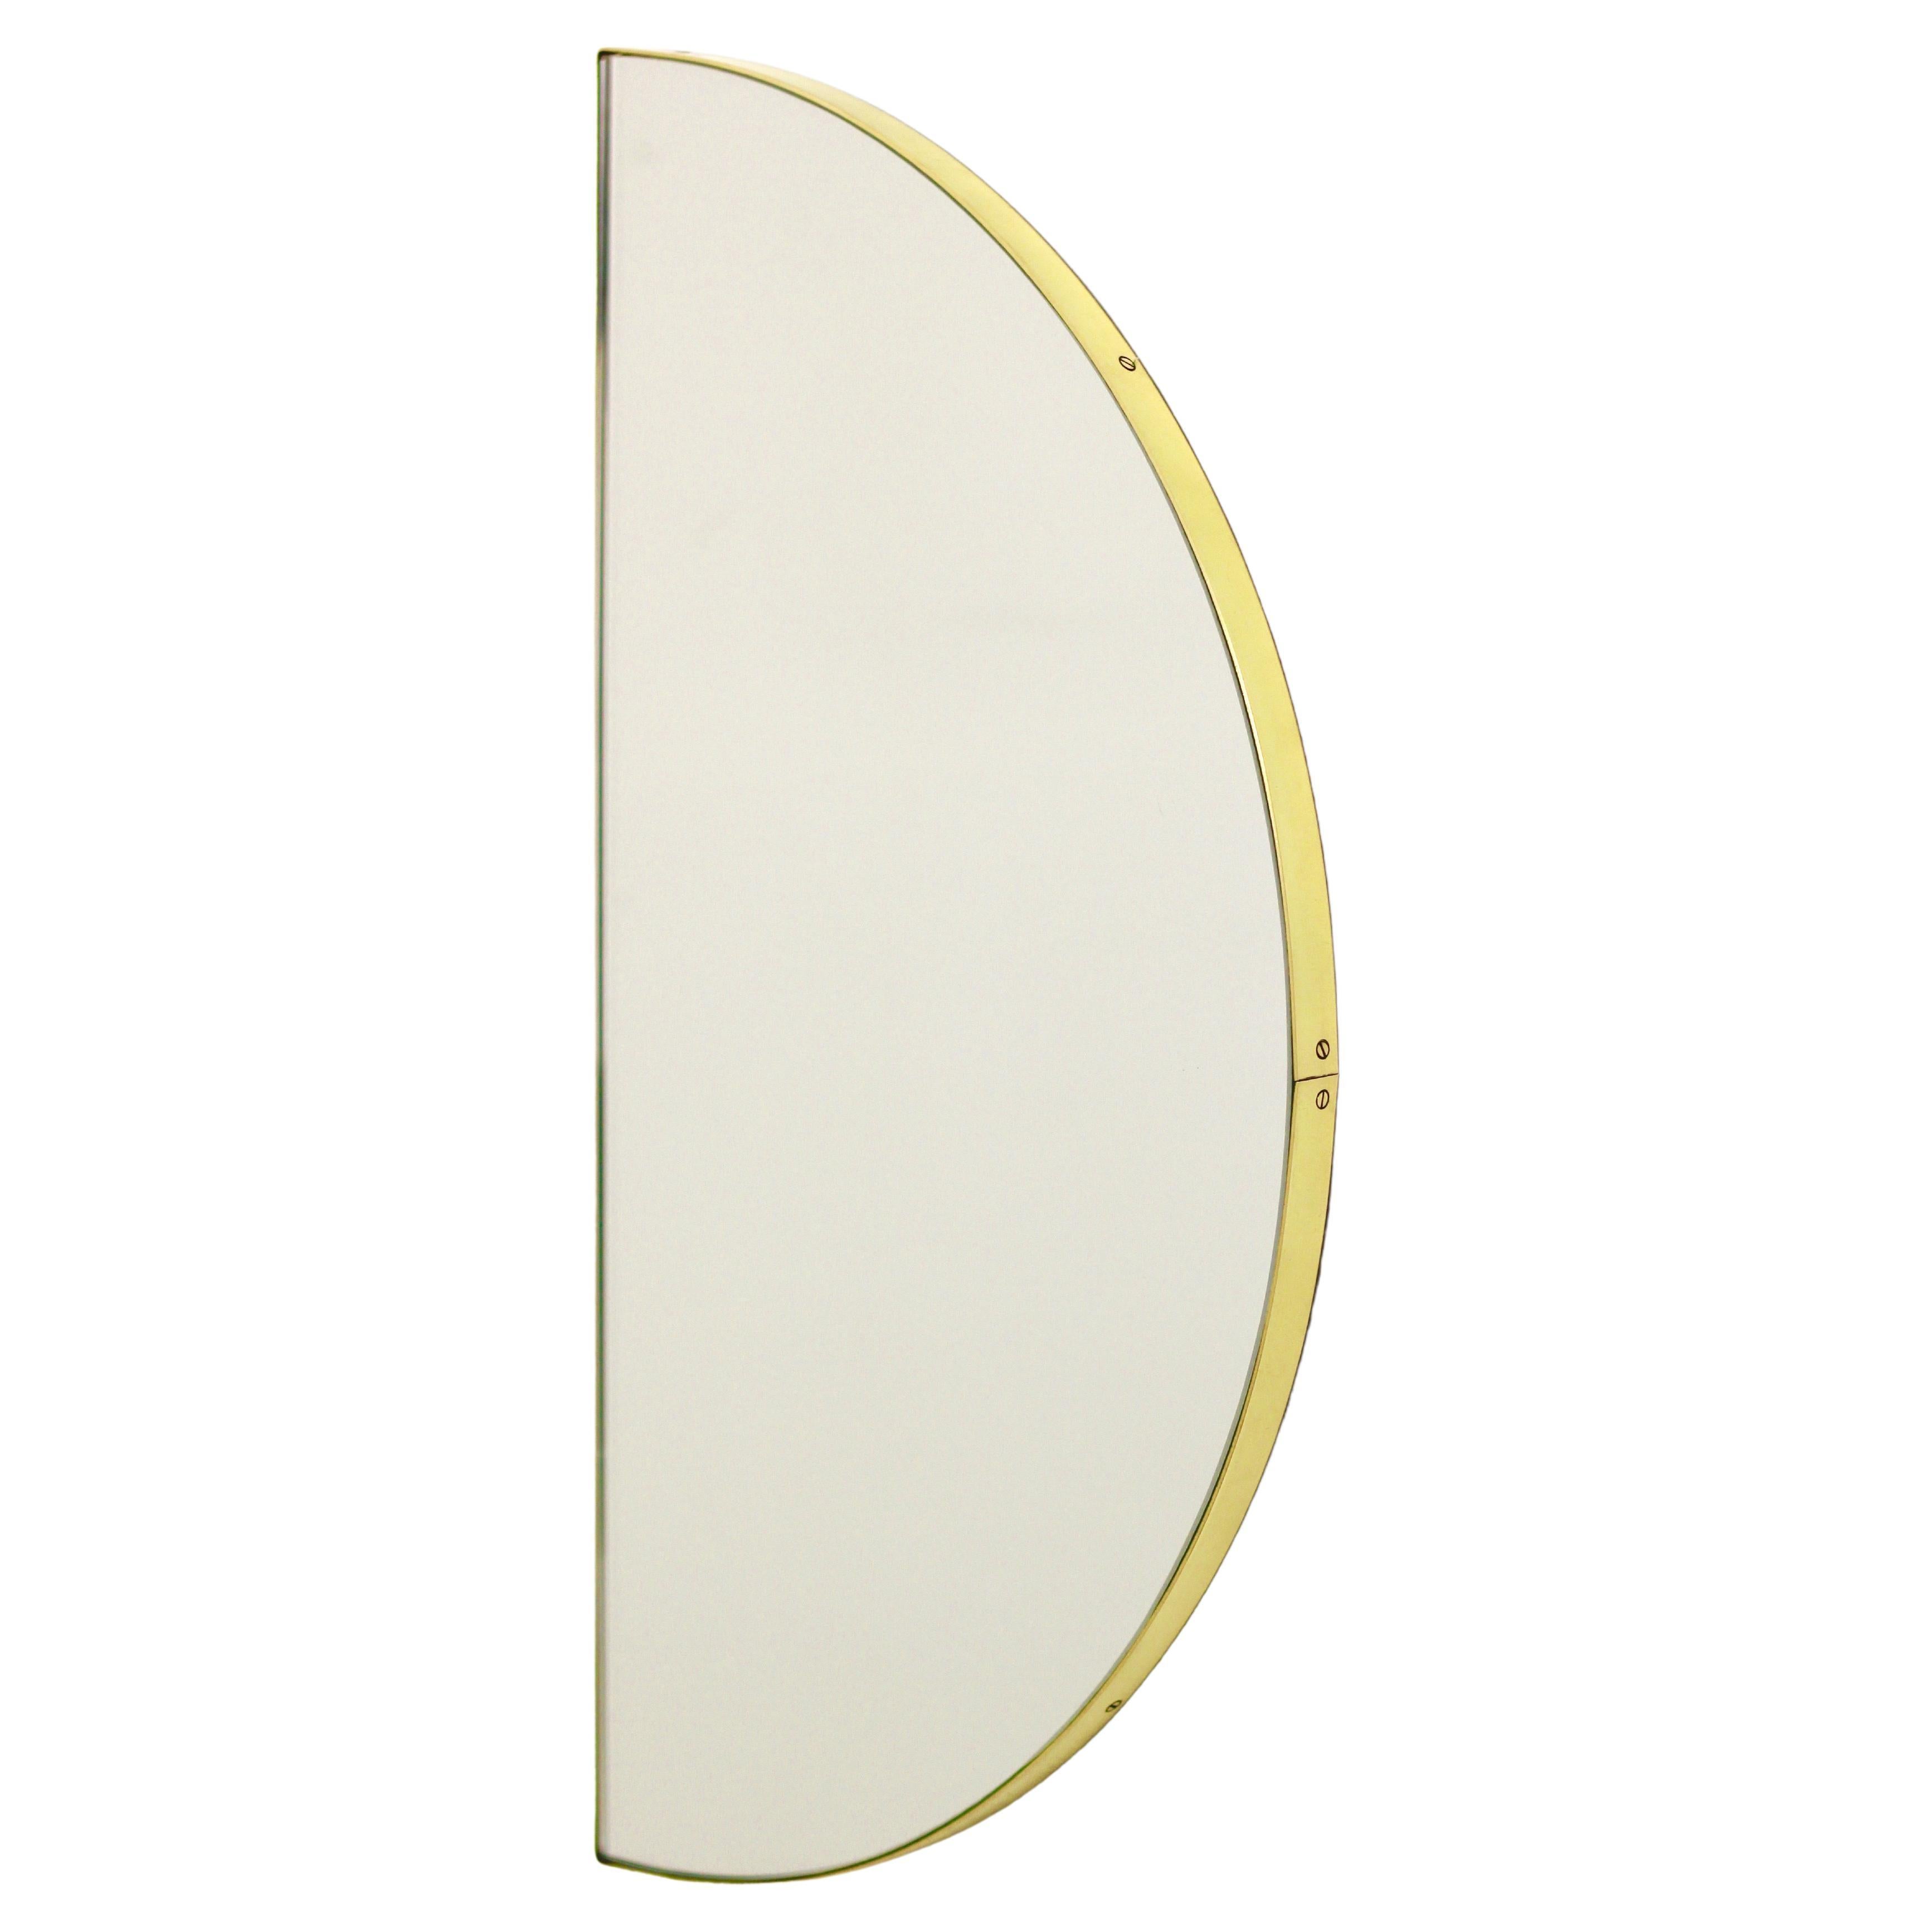 Halbkreisförmiger minimalistischer Luna-Spiegel mit Messingrahmen, Medium